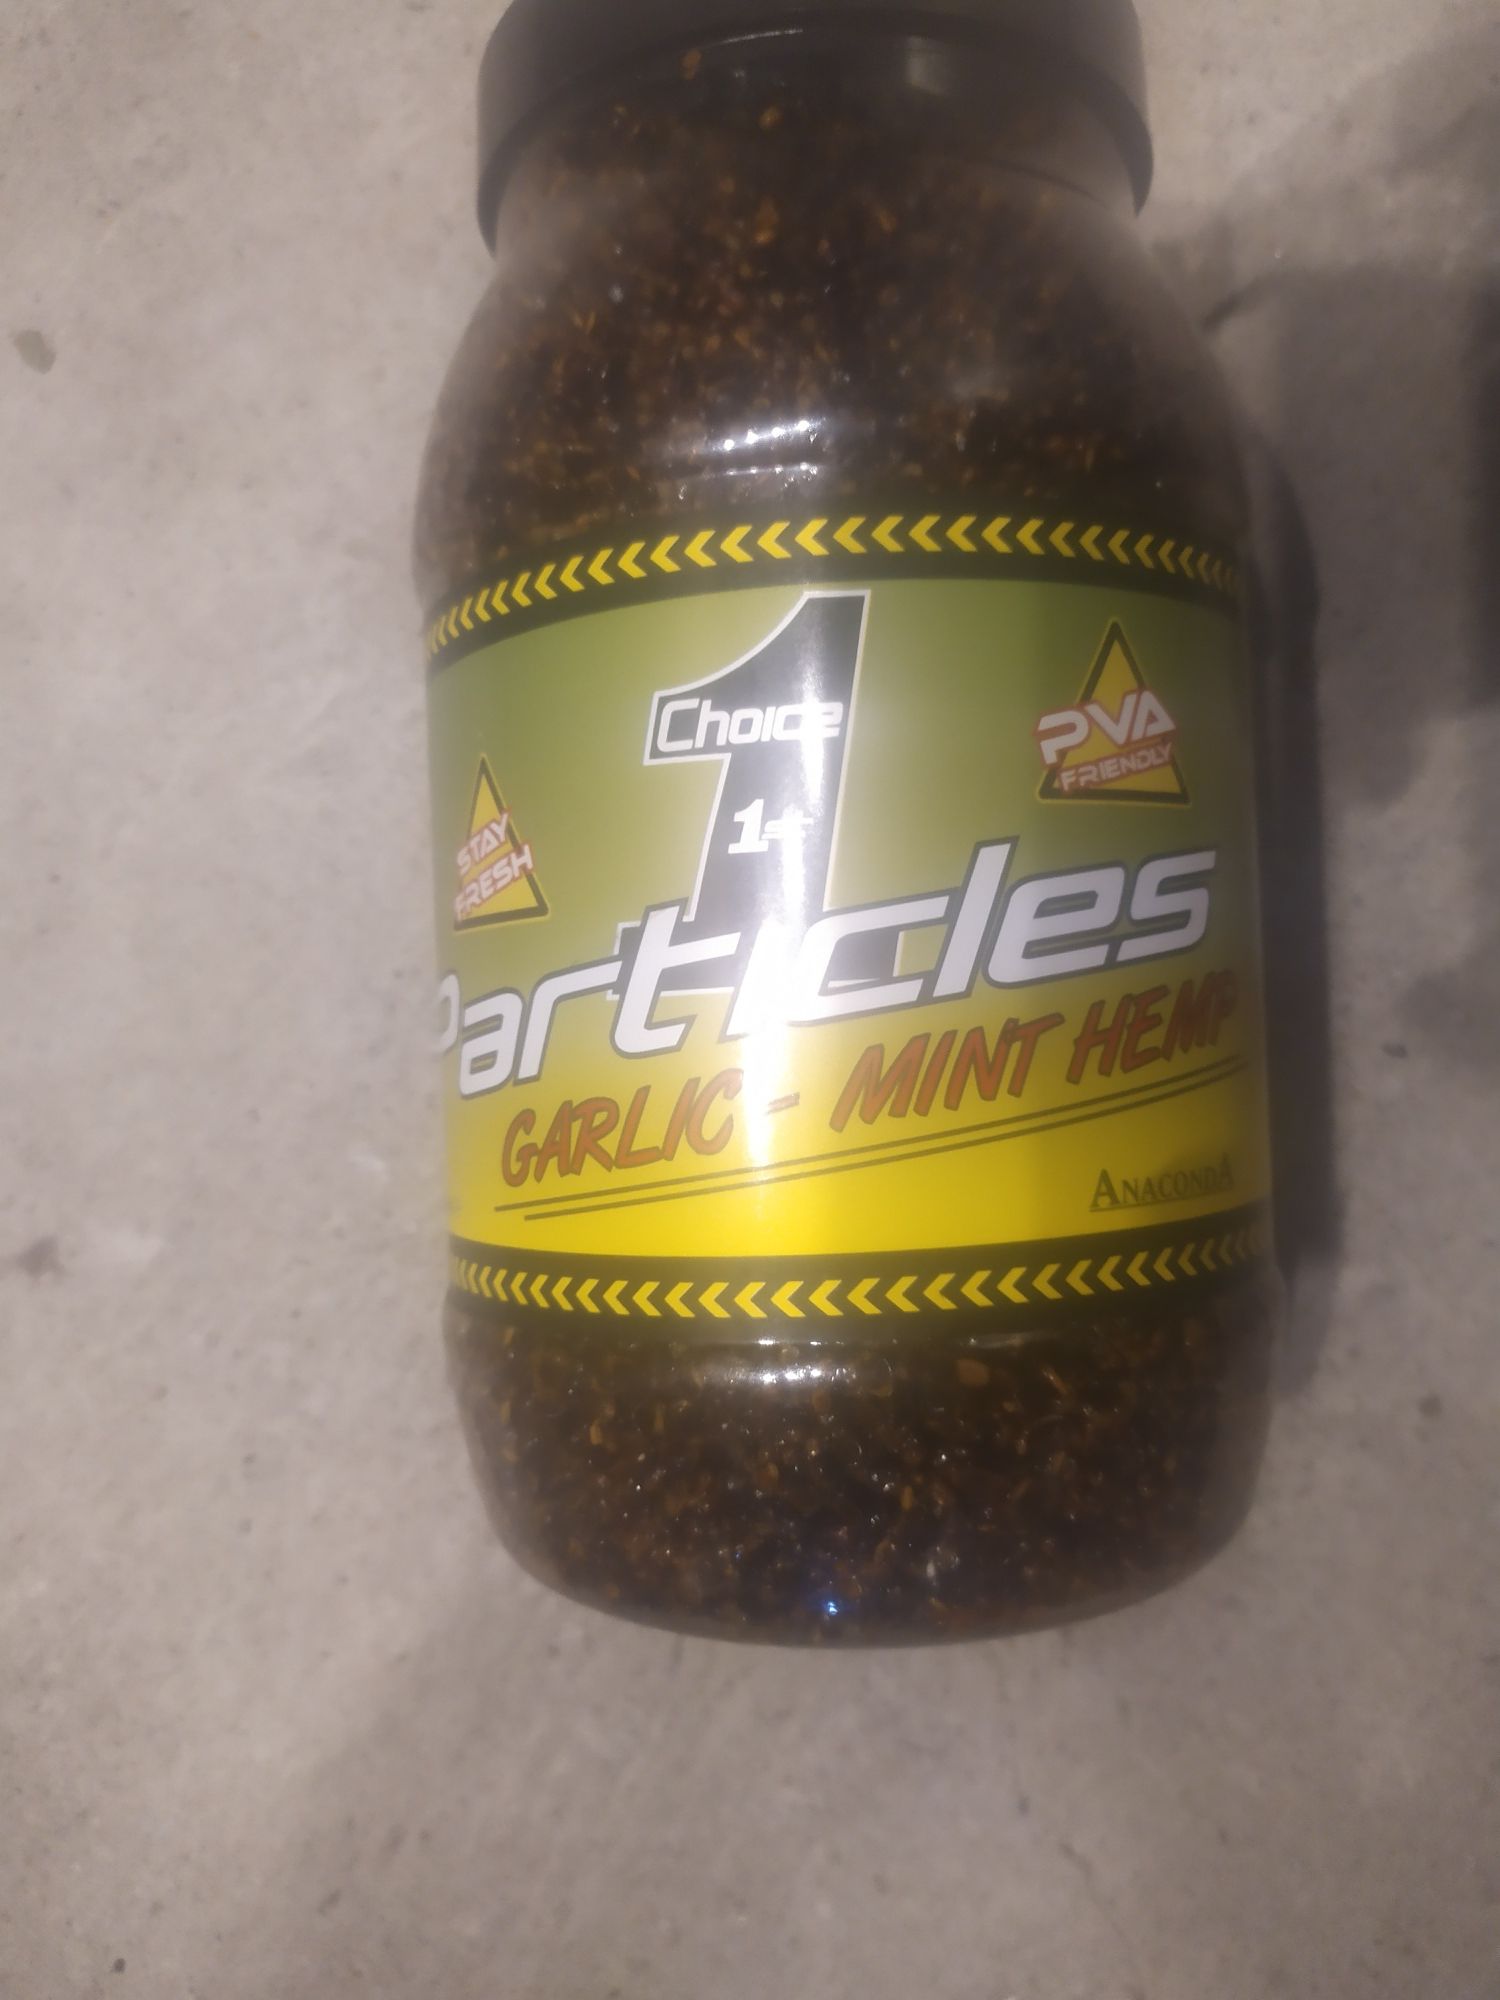 Konopia wędkarska Anaconda Particles Garlic-Mint hemp 2250ml okazja